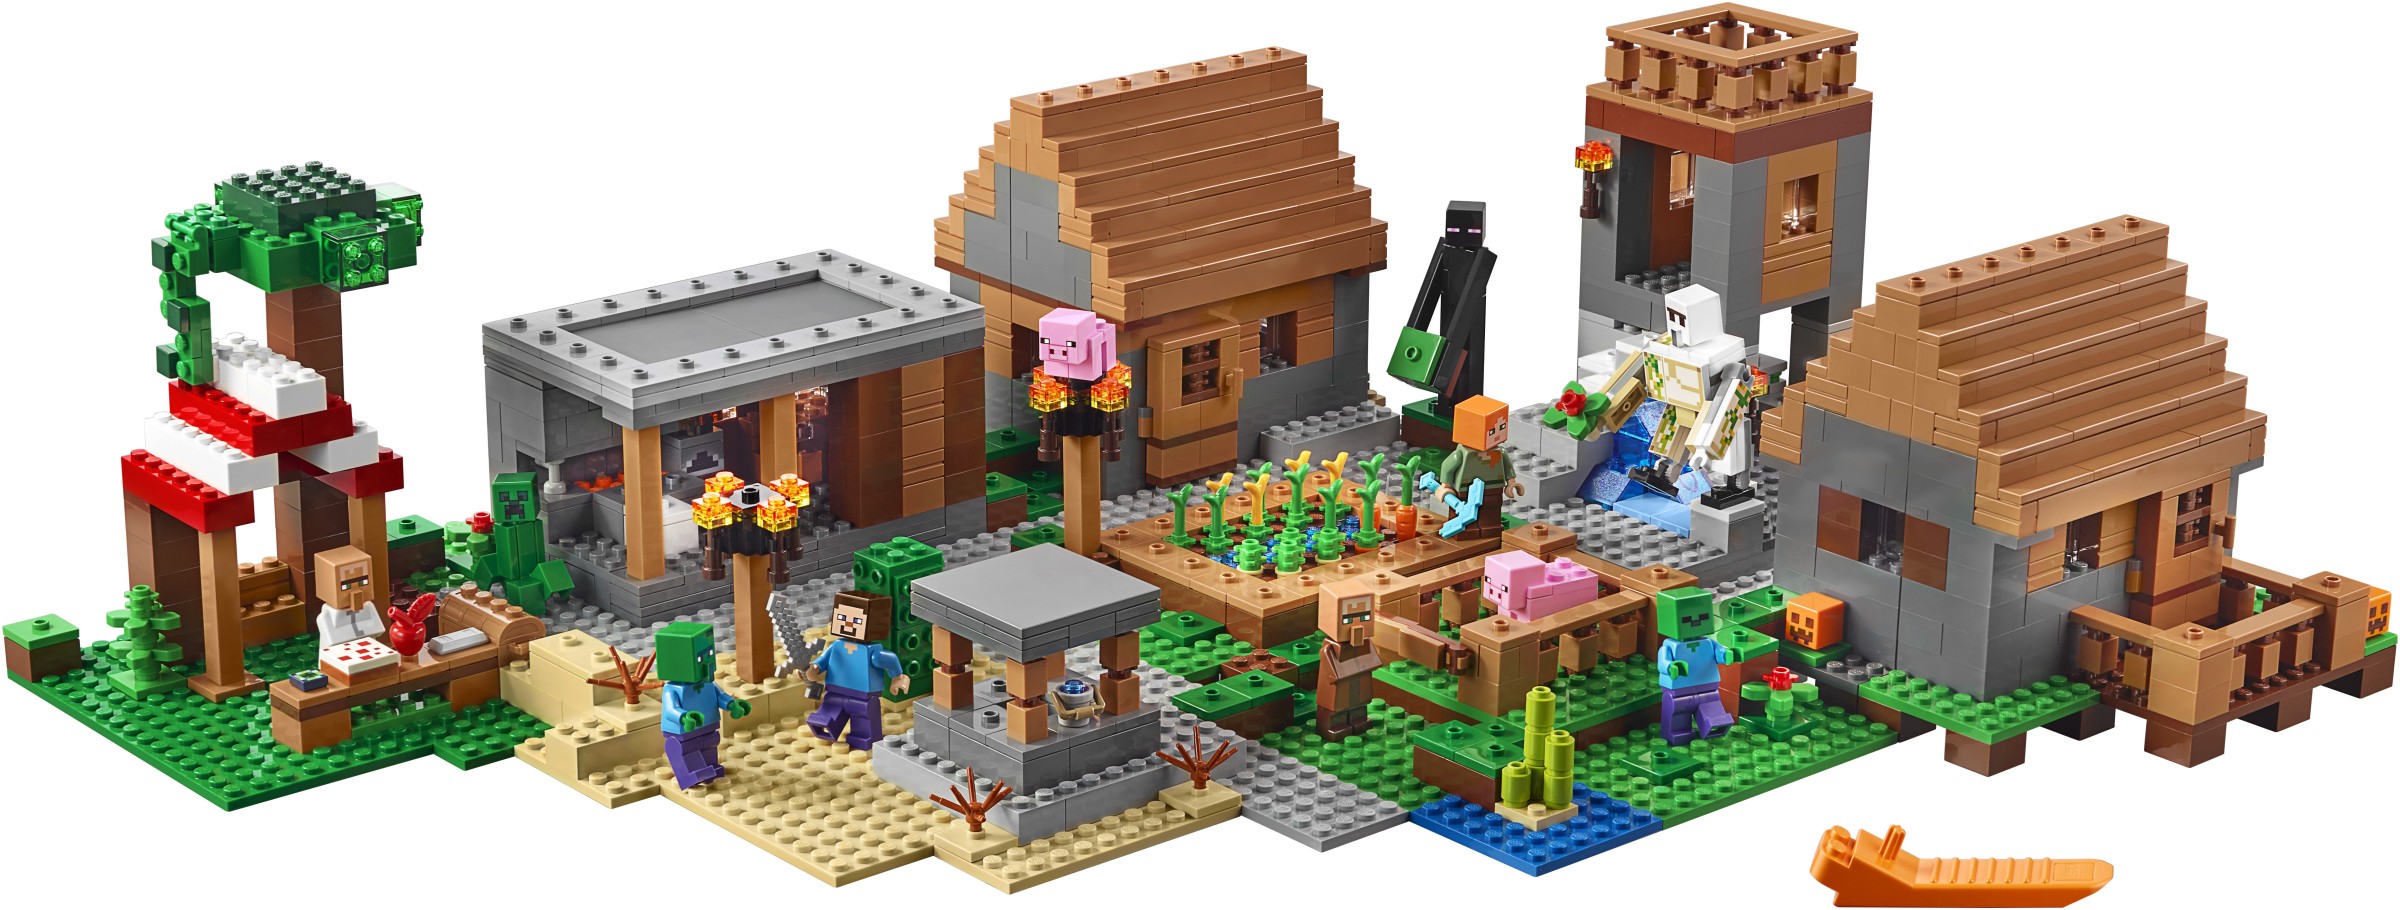 21128 Minecraft The Village: the next 